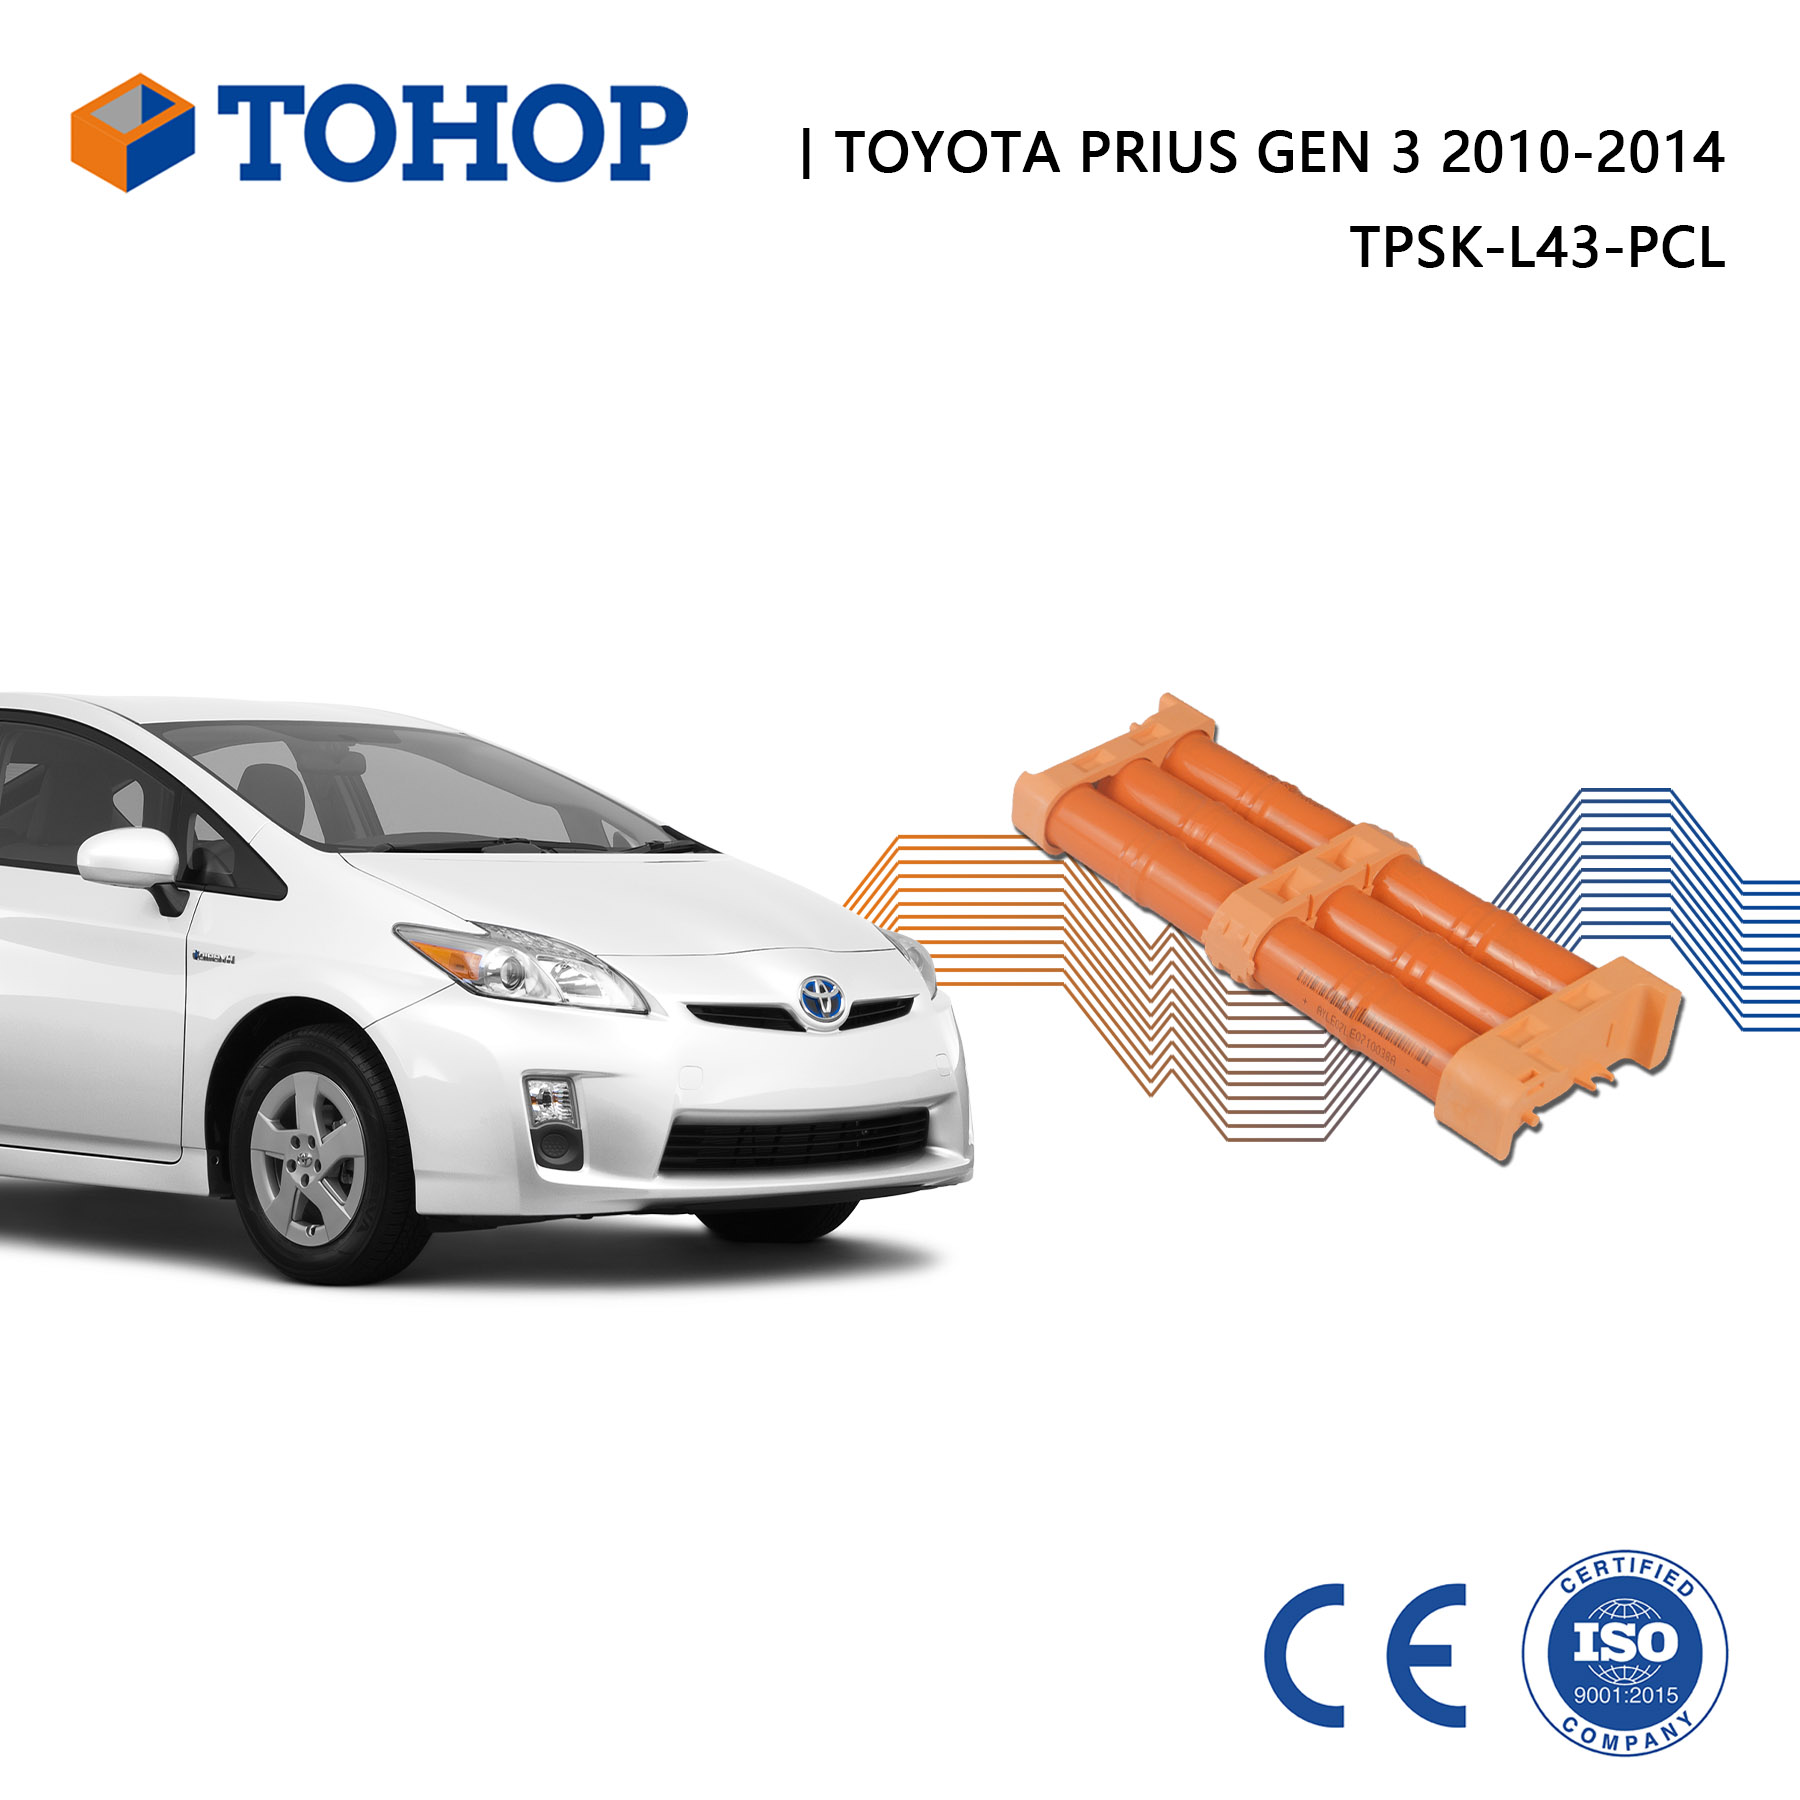 Reemplazo de baterías híbridas Toyota Prius Gen 3 Tohop para HEV para HEV